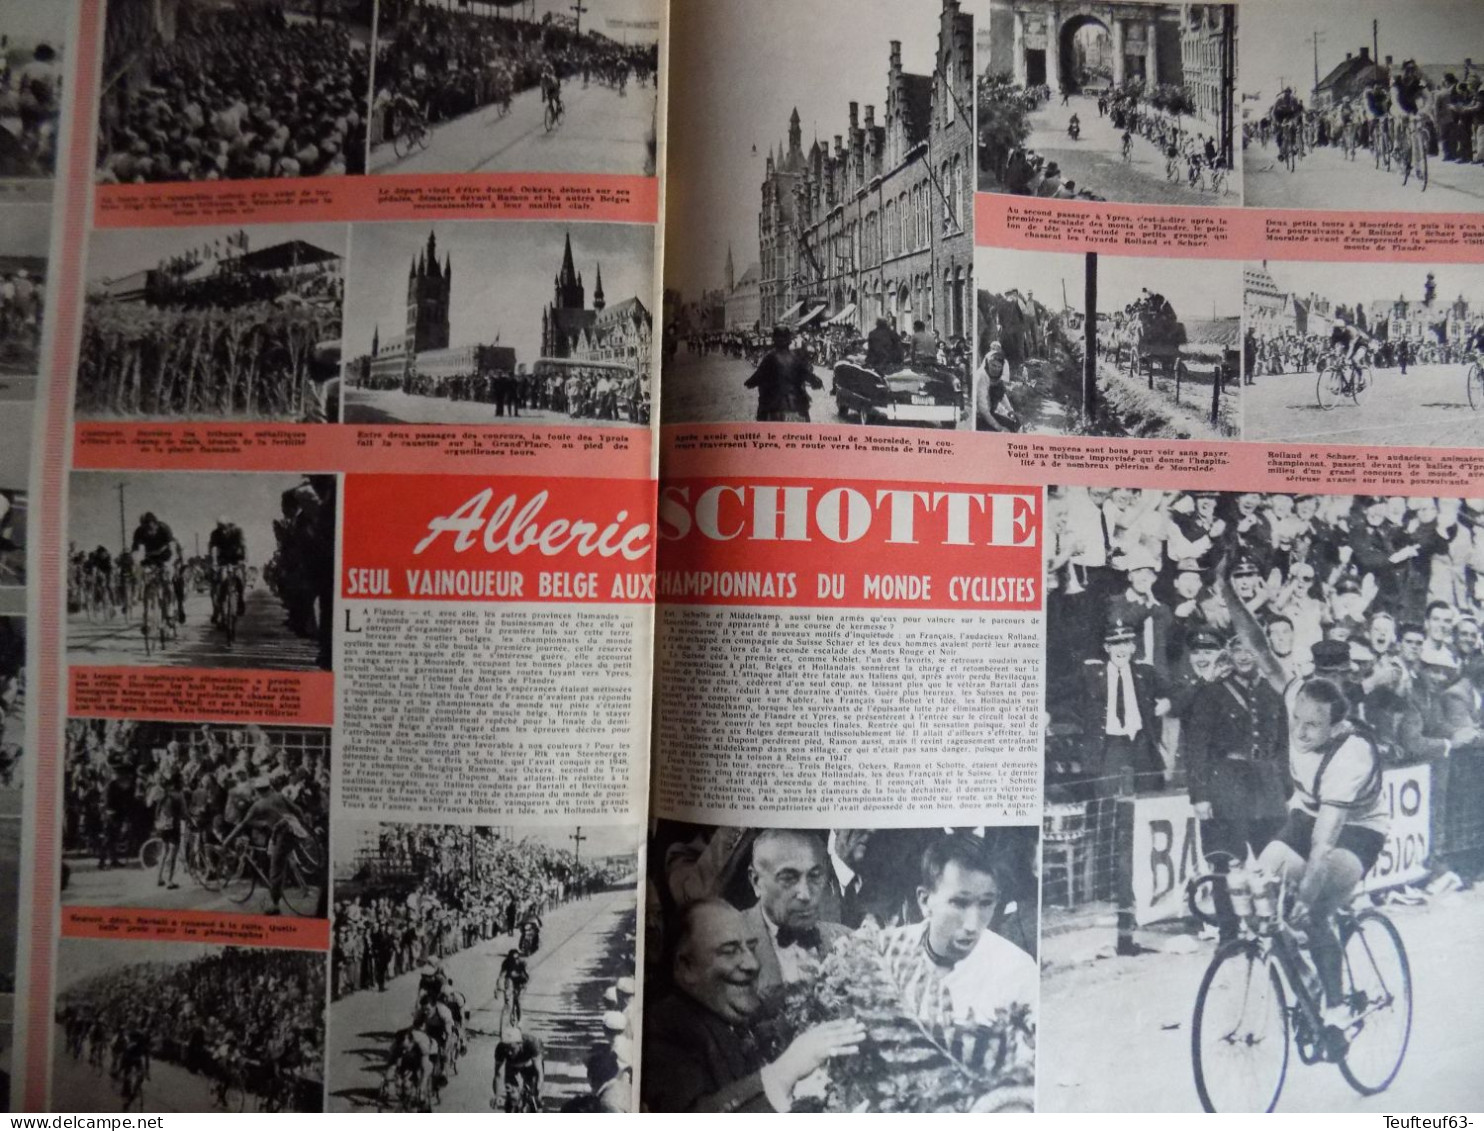 Le Soir Illustré N° 948 Mariage Au Luxembourg - Richard Todd - Cyclisme Alberic Schotte - Docteur Chenevée Homme-triton - Informaciones Generales